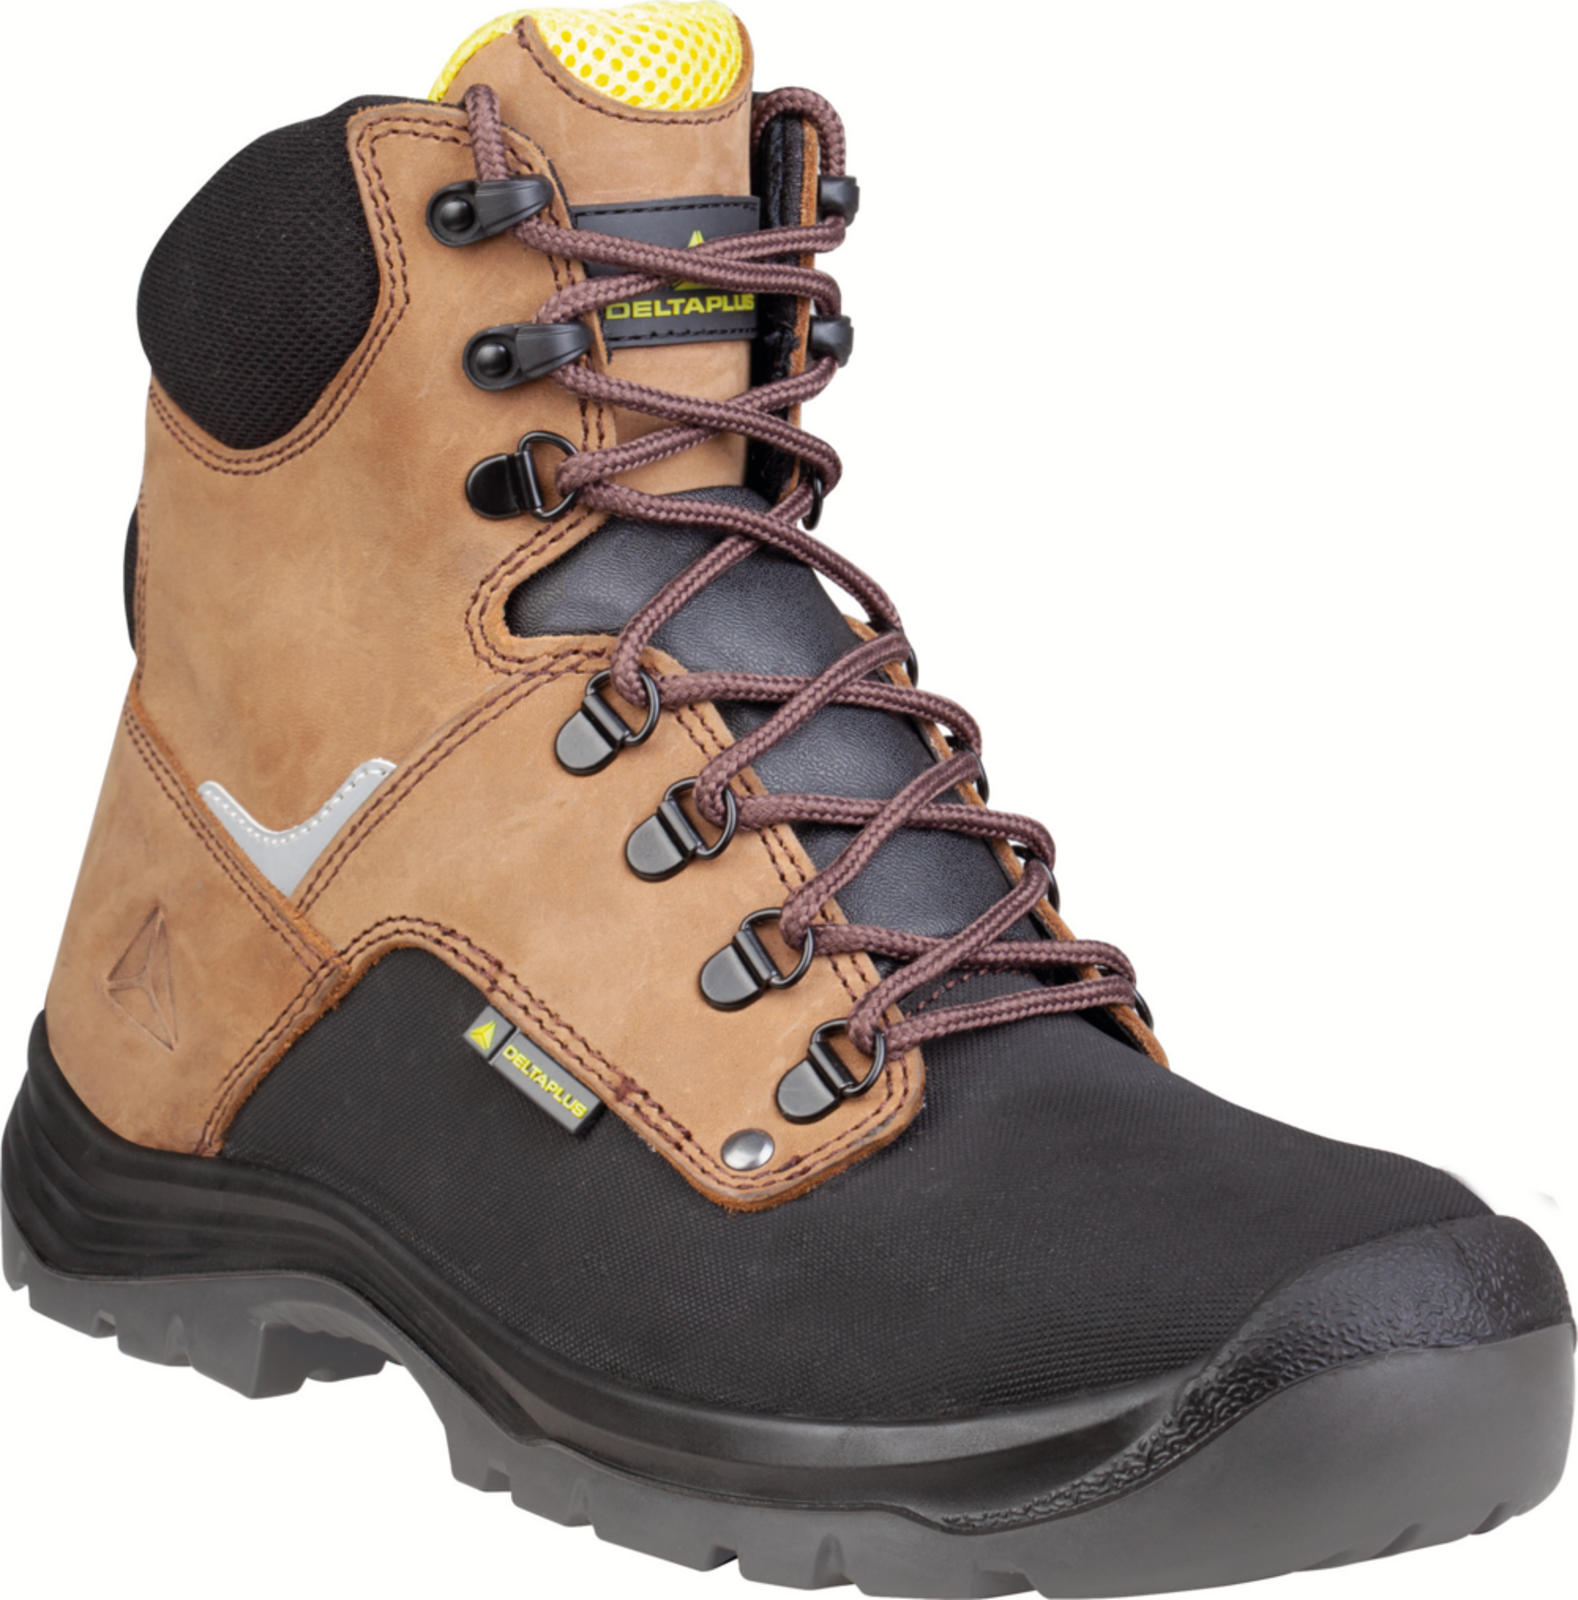 Vysoká bezpečnostná obuv Delta Plus Atacama S3 - veľkosť: 48, farba: hnedá/čierna